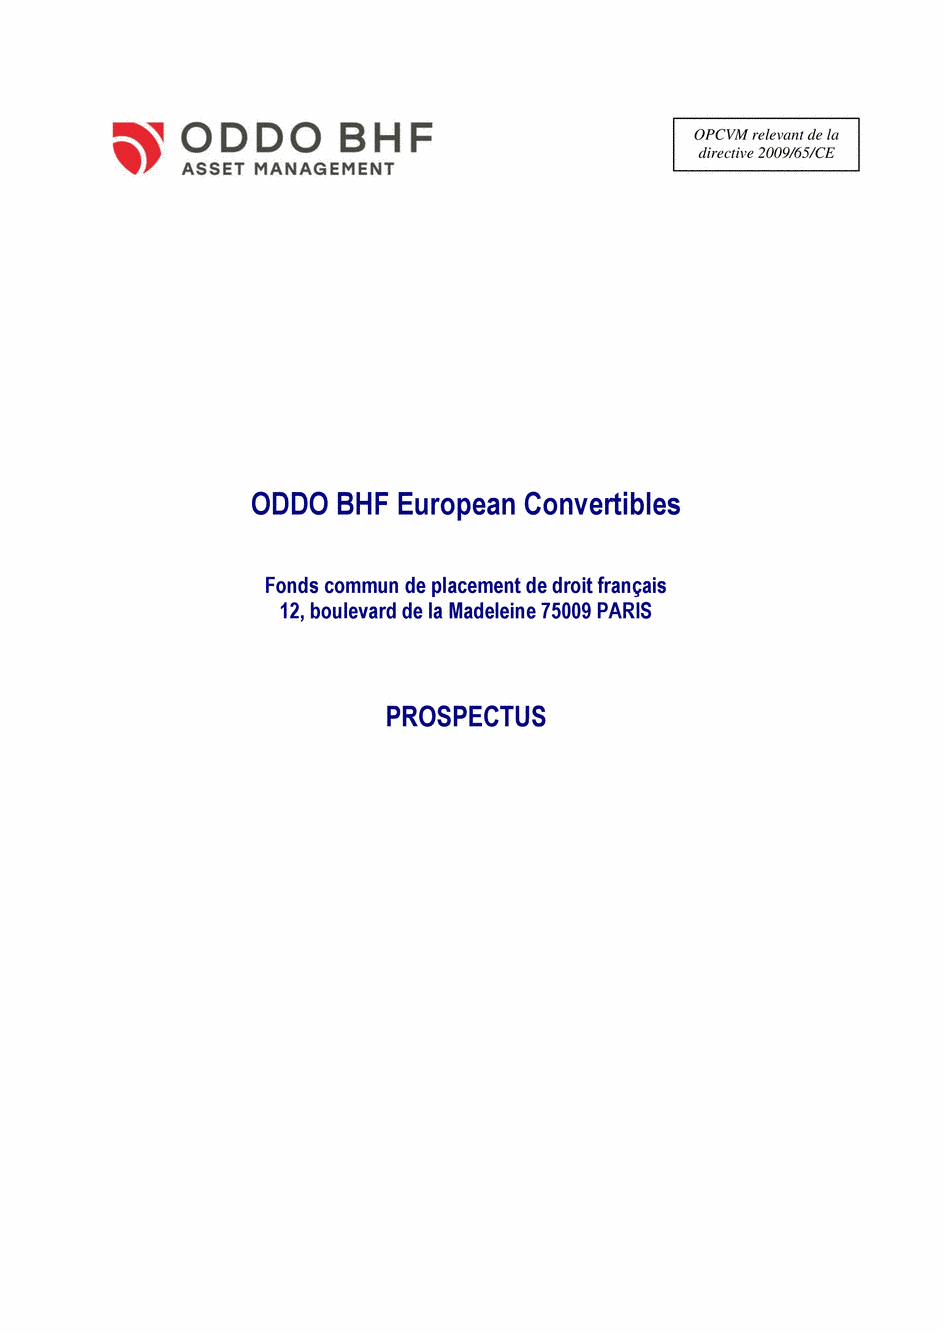 Prospectus ODDO BHF EUROPEAN CONVERTIBLES CI-EUR - 15/07/2020 - Français